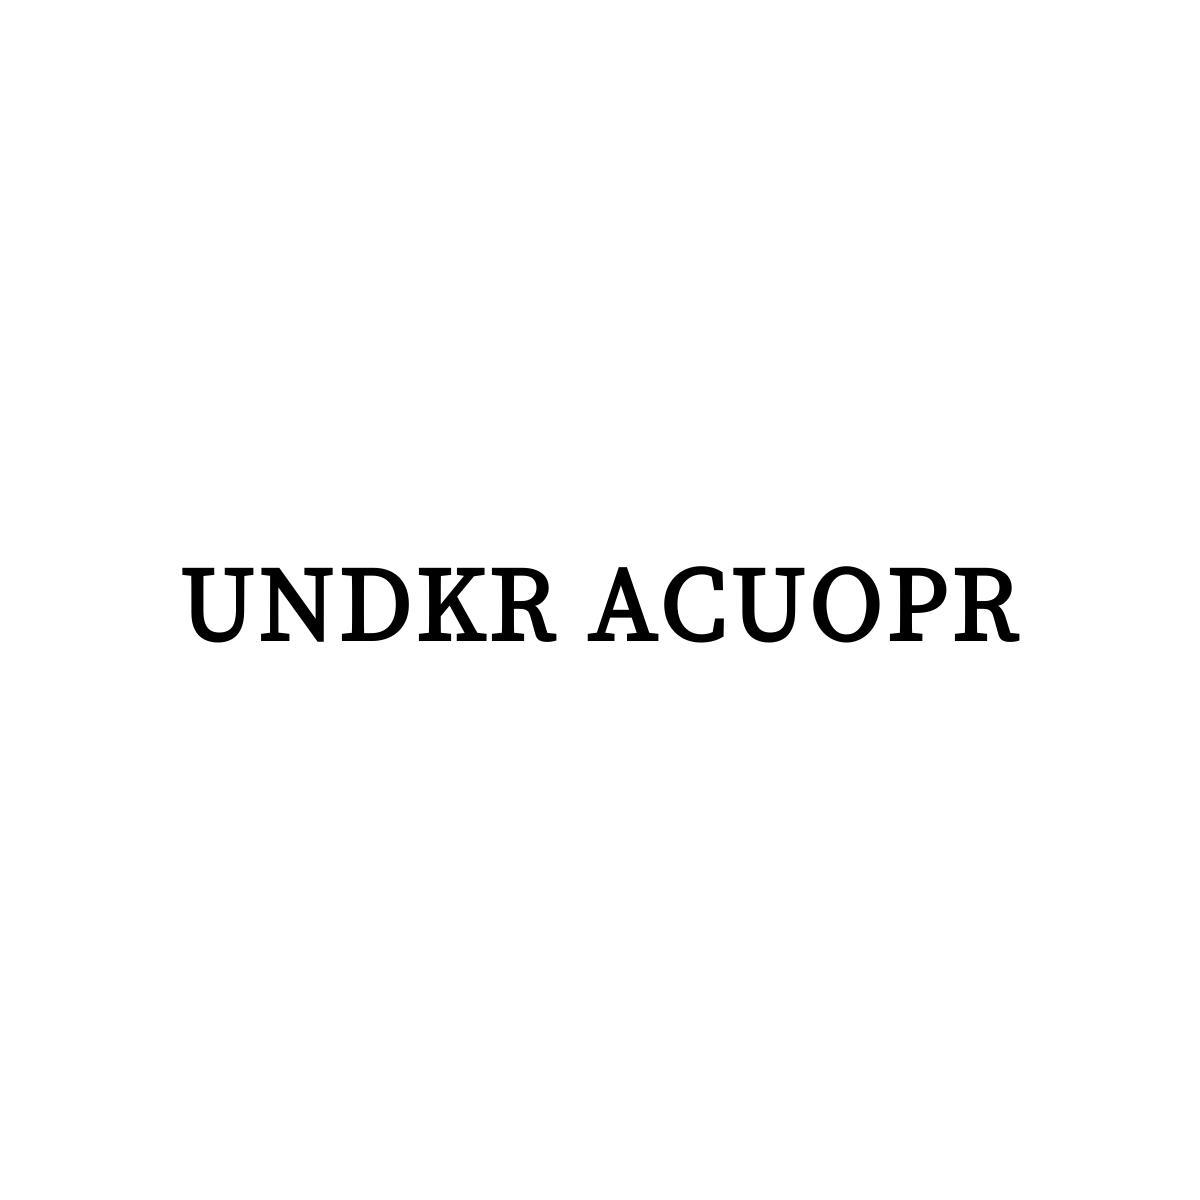 25类-服装鞋帽UNDKR ACUOPR商标转让